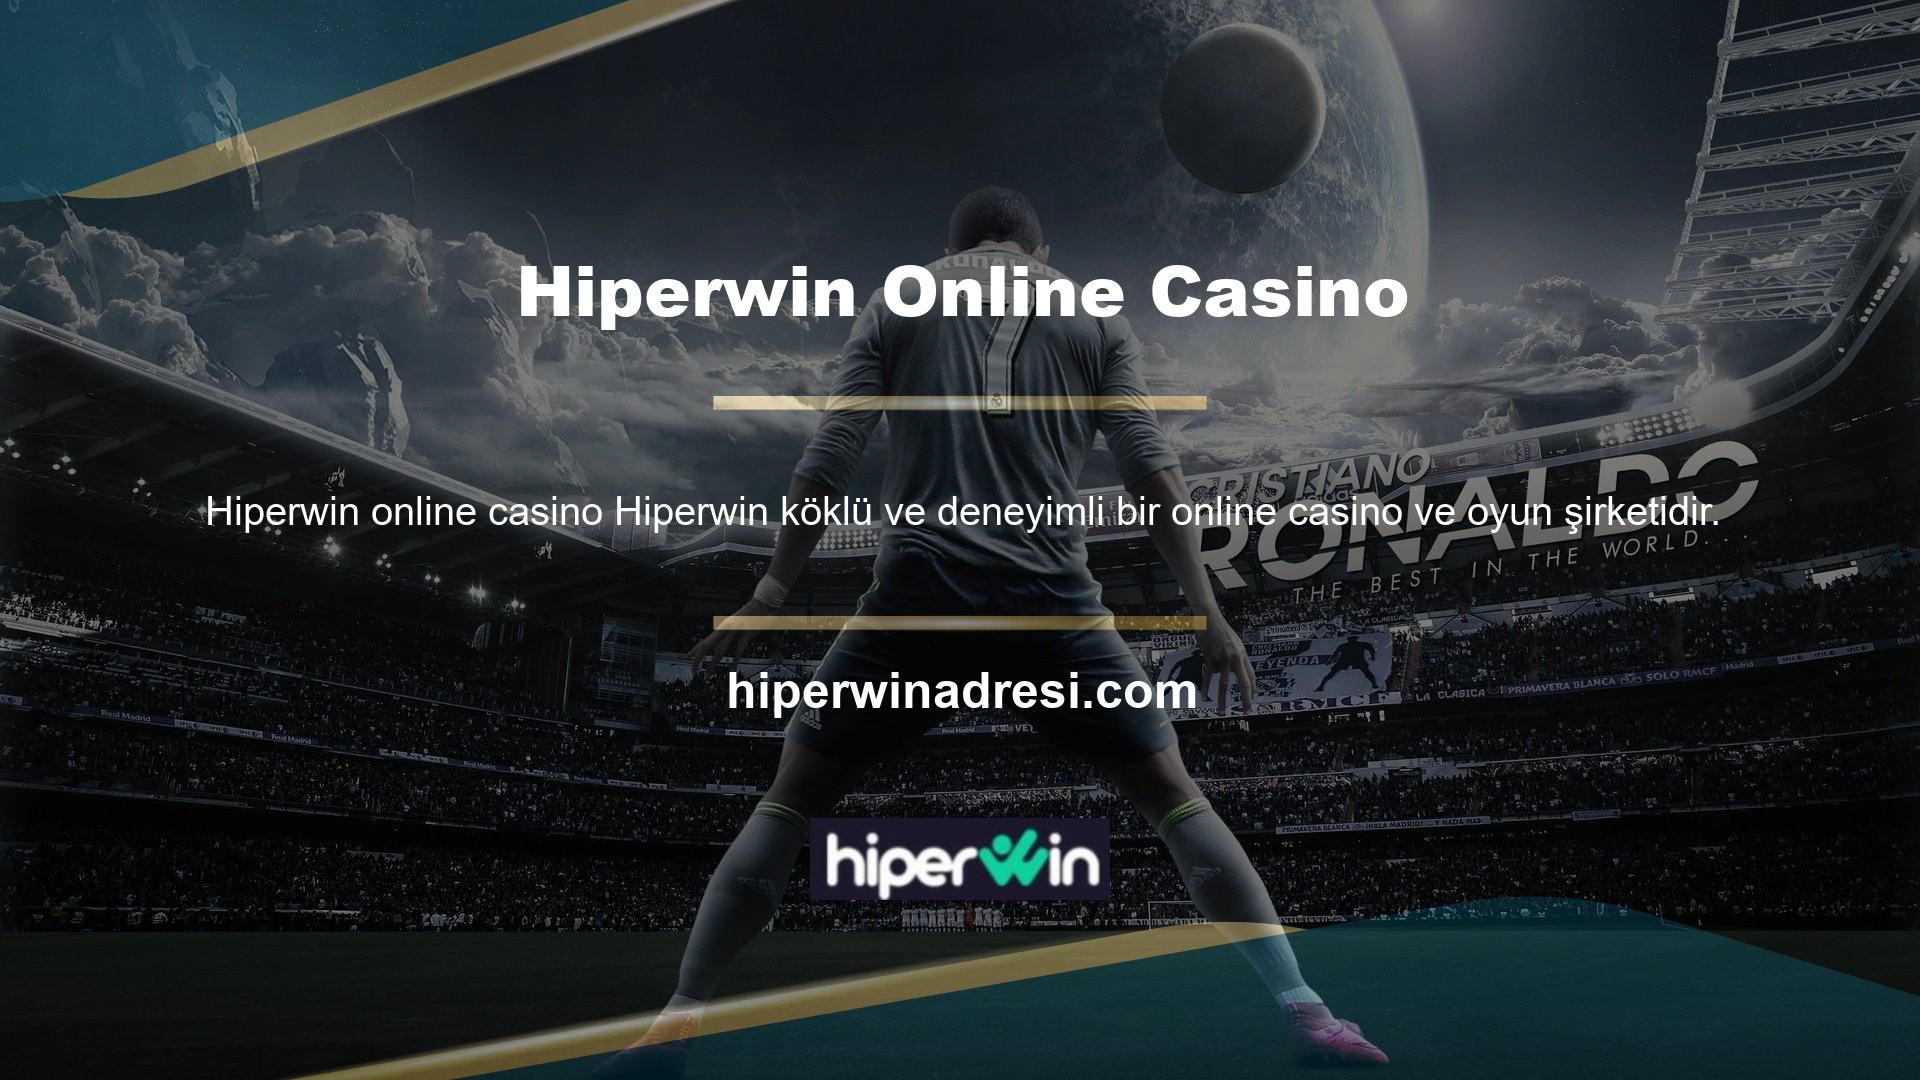 Hiperwin önde gelen casino ve oyun sağlayıcılarından biridir